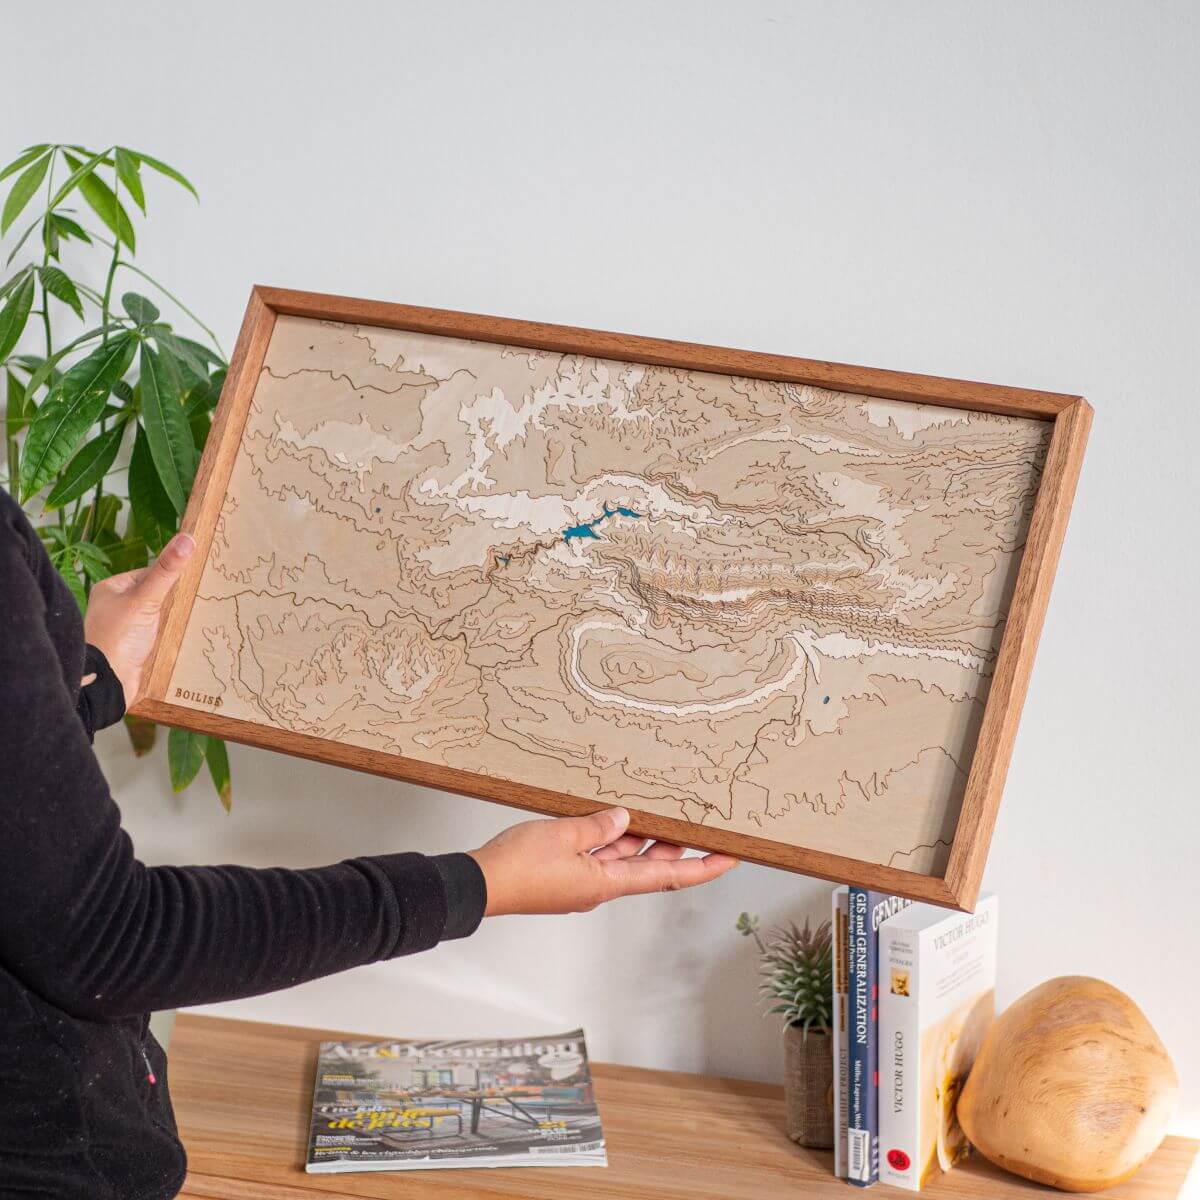 Déco naturelle avec la carte du massif de la Sainte-Victoire fabriquée en France de manière artisanale